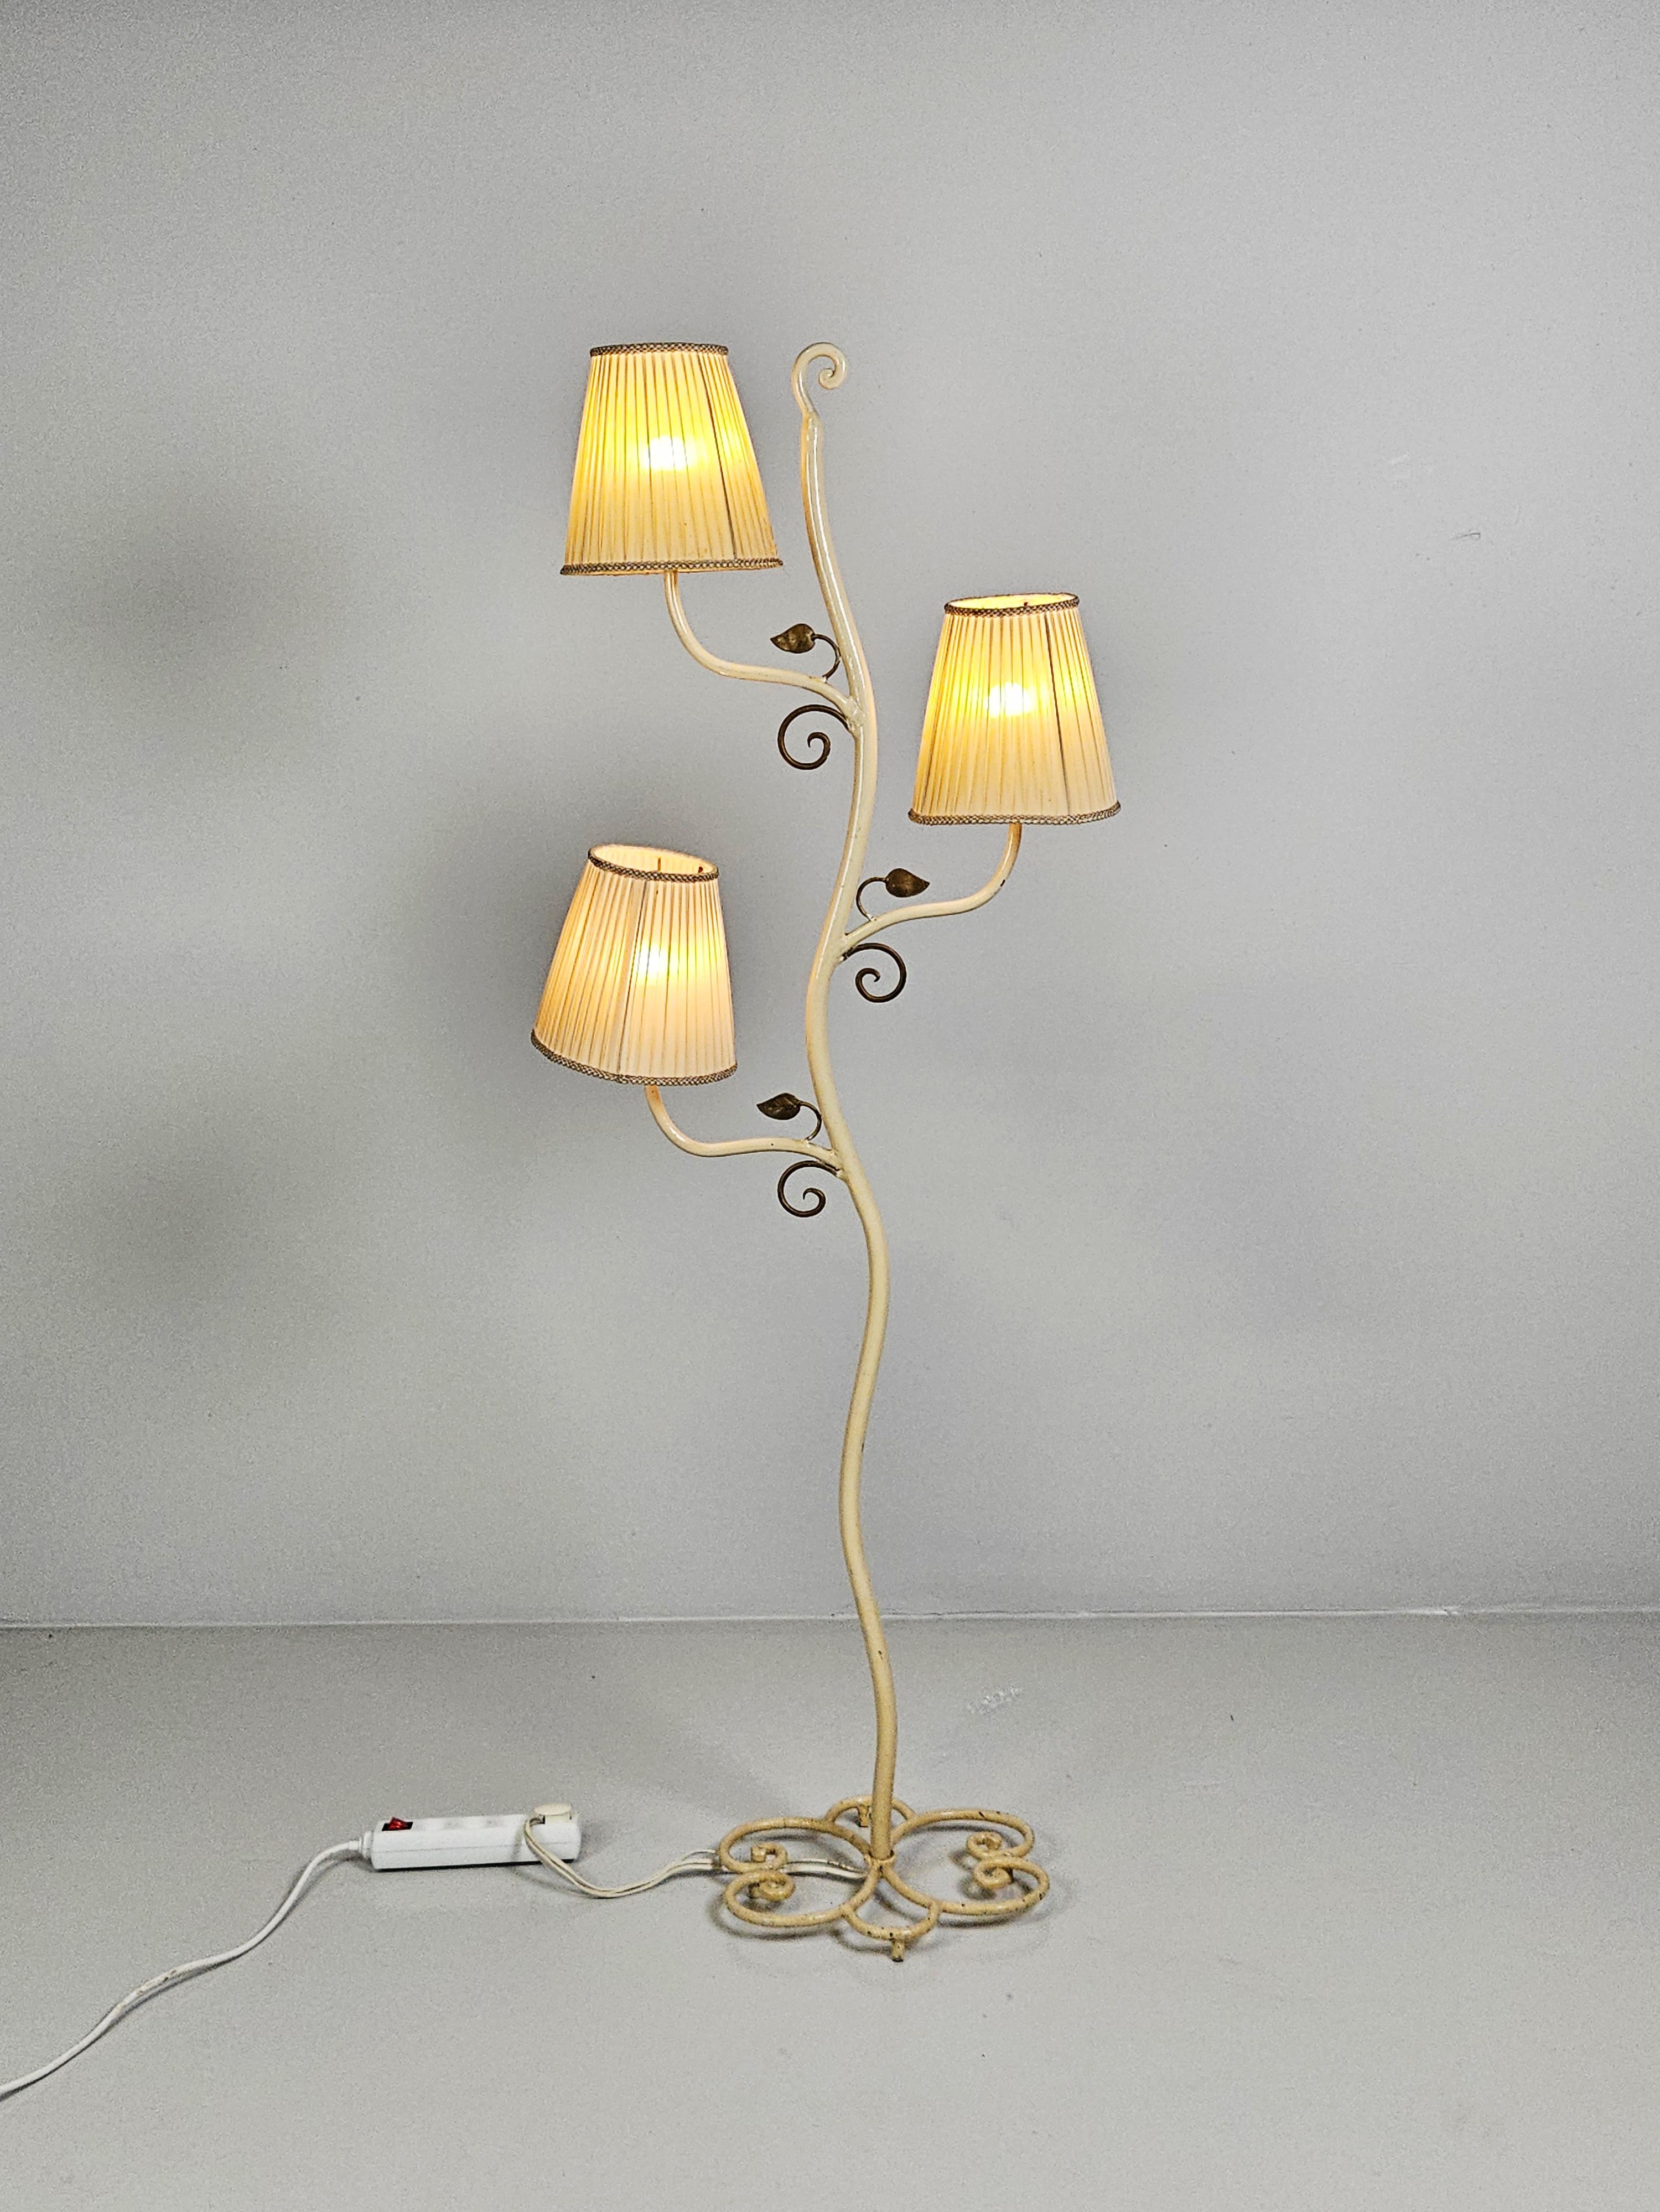 Einzigartige Stehlampe, die wahrscheinlich von Bjerkås Armatur zu Beginn des 20. Jahrhunderts hergestellt wurde. 

Die Farbe ist gebrochen weiß mit goldfarben lackierten Blättern. 

Die Originalschirme sind enthalten, haben aber Löcher und Unkraut. 